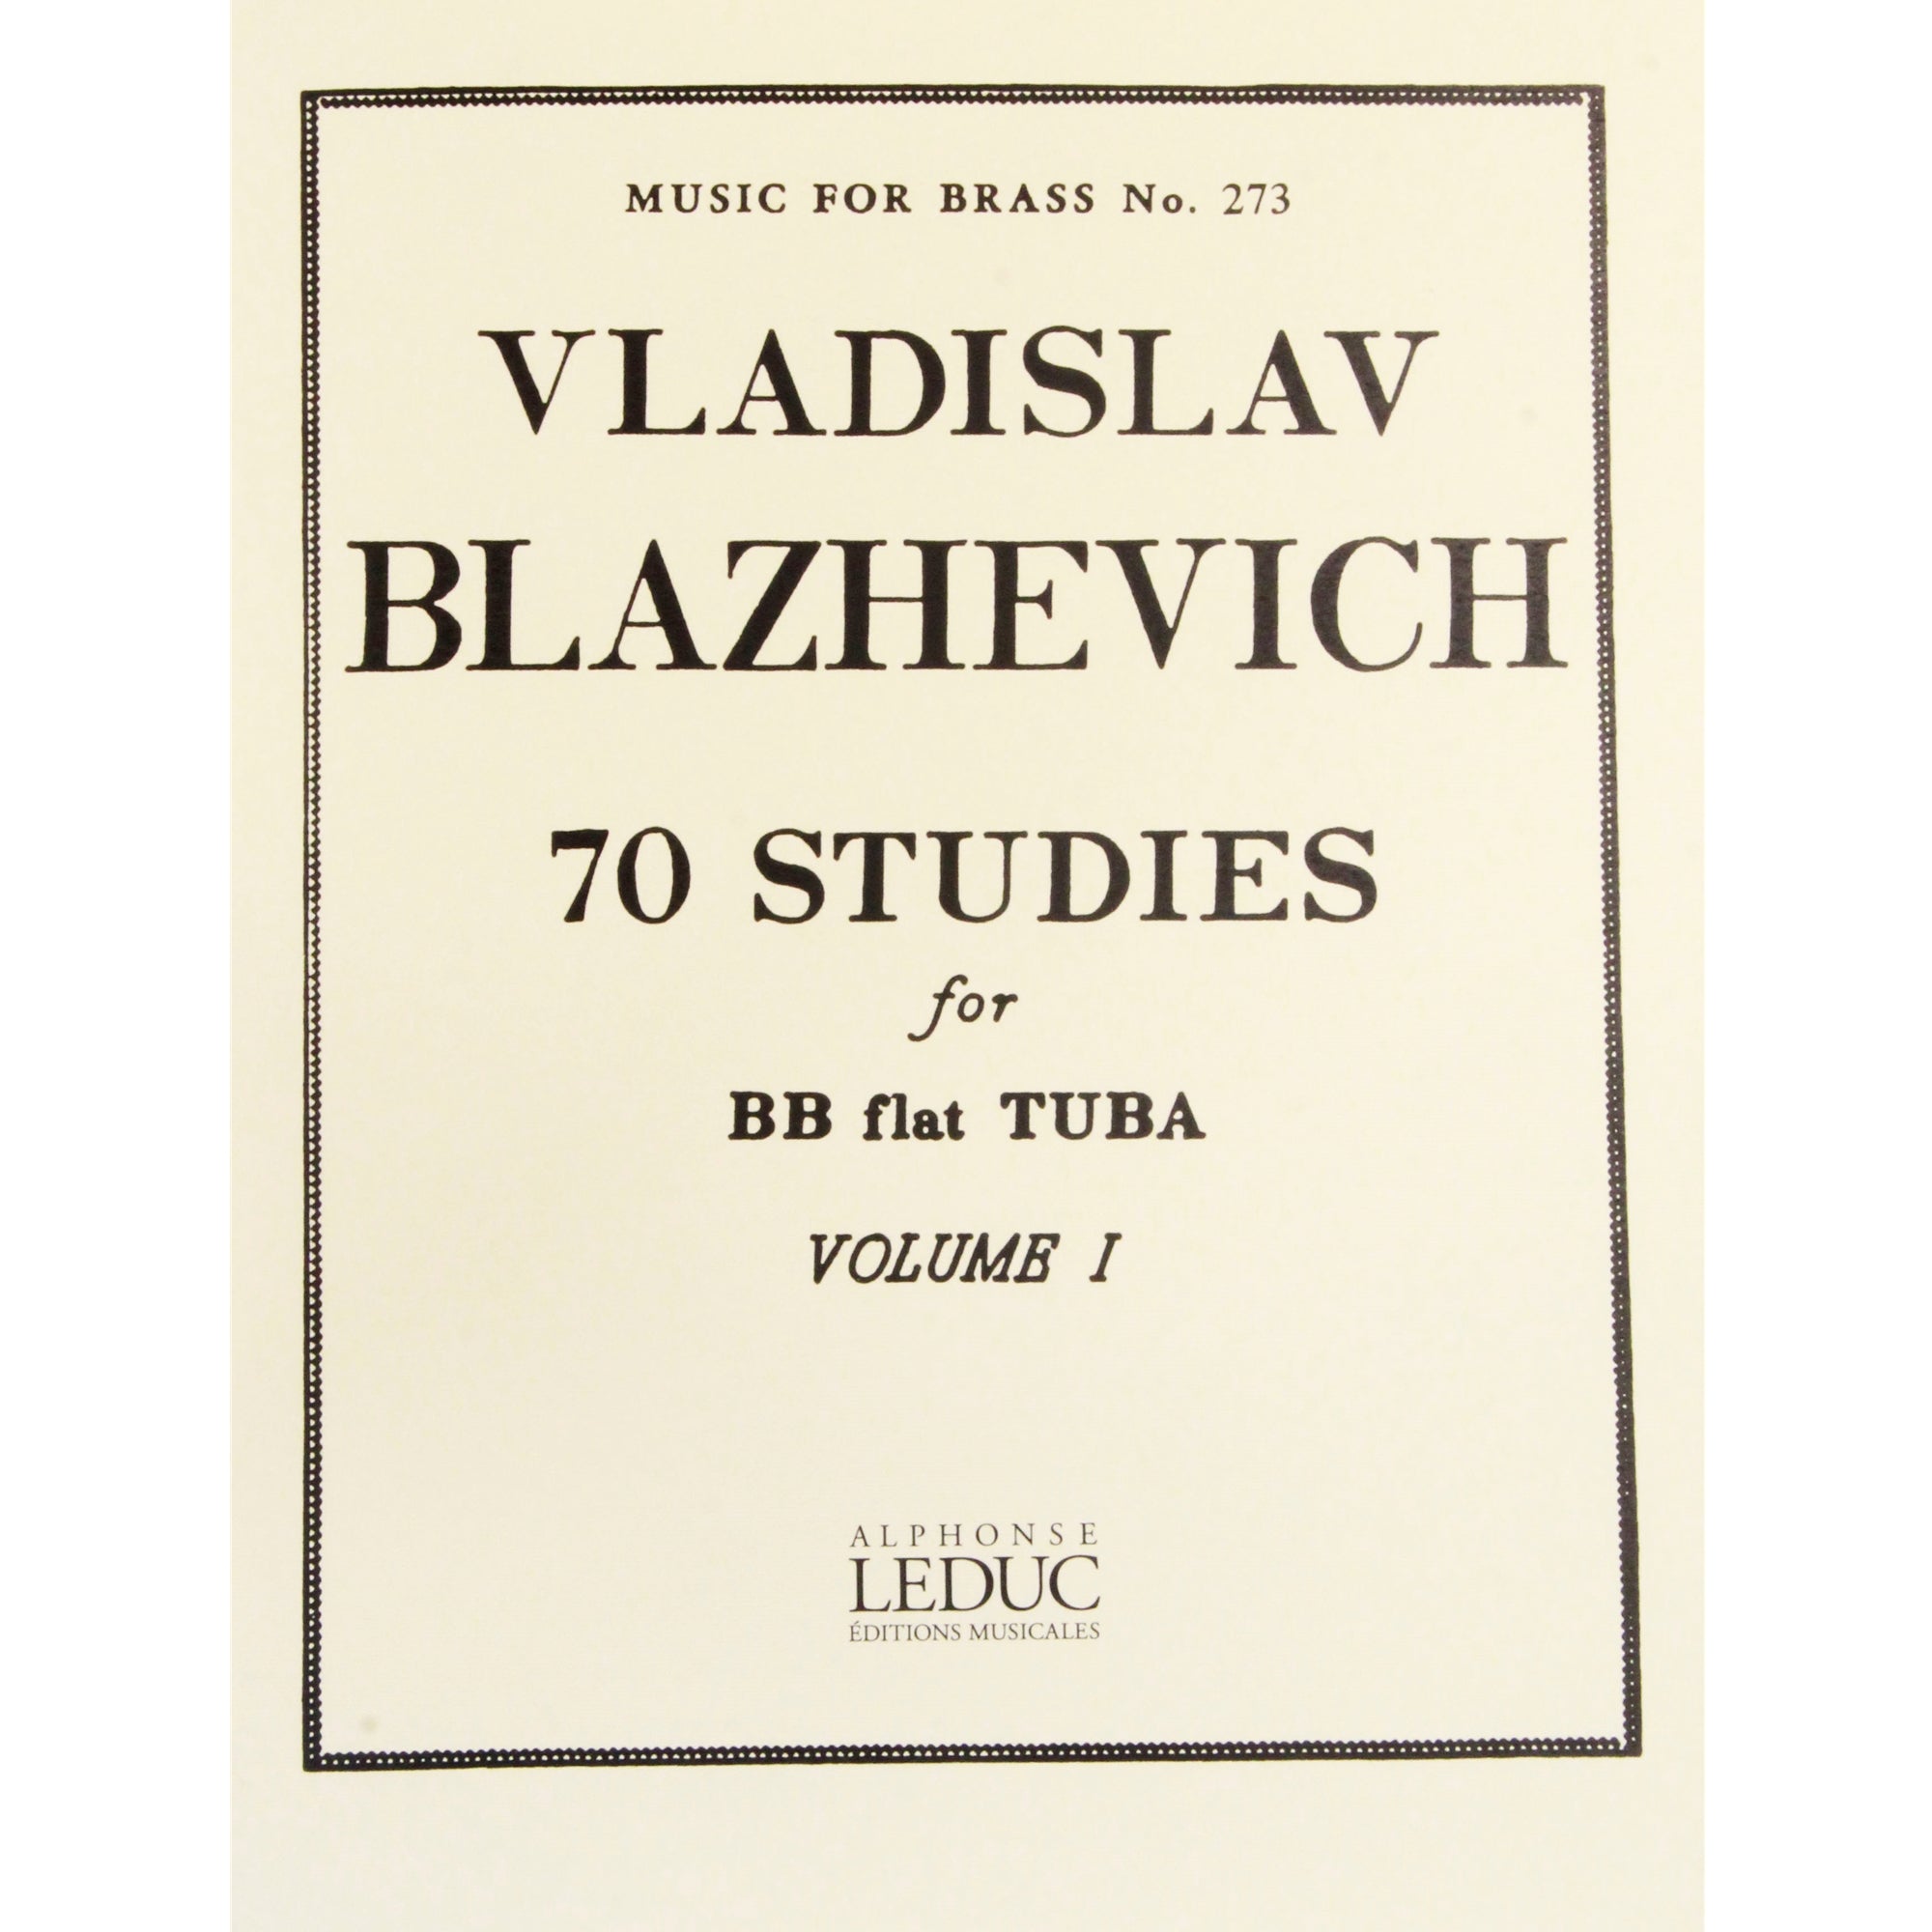 AL. LEDUC AL28596 70 Studies for Tuba Vol I by Vladisla Blazhevich